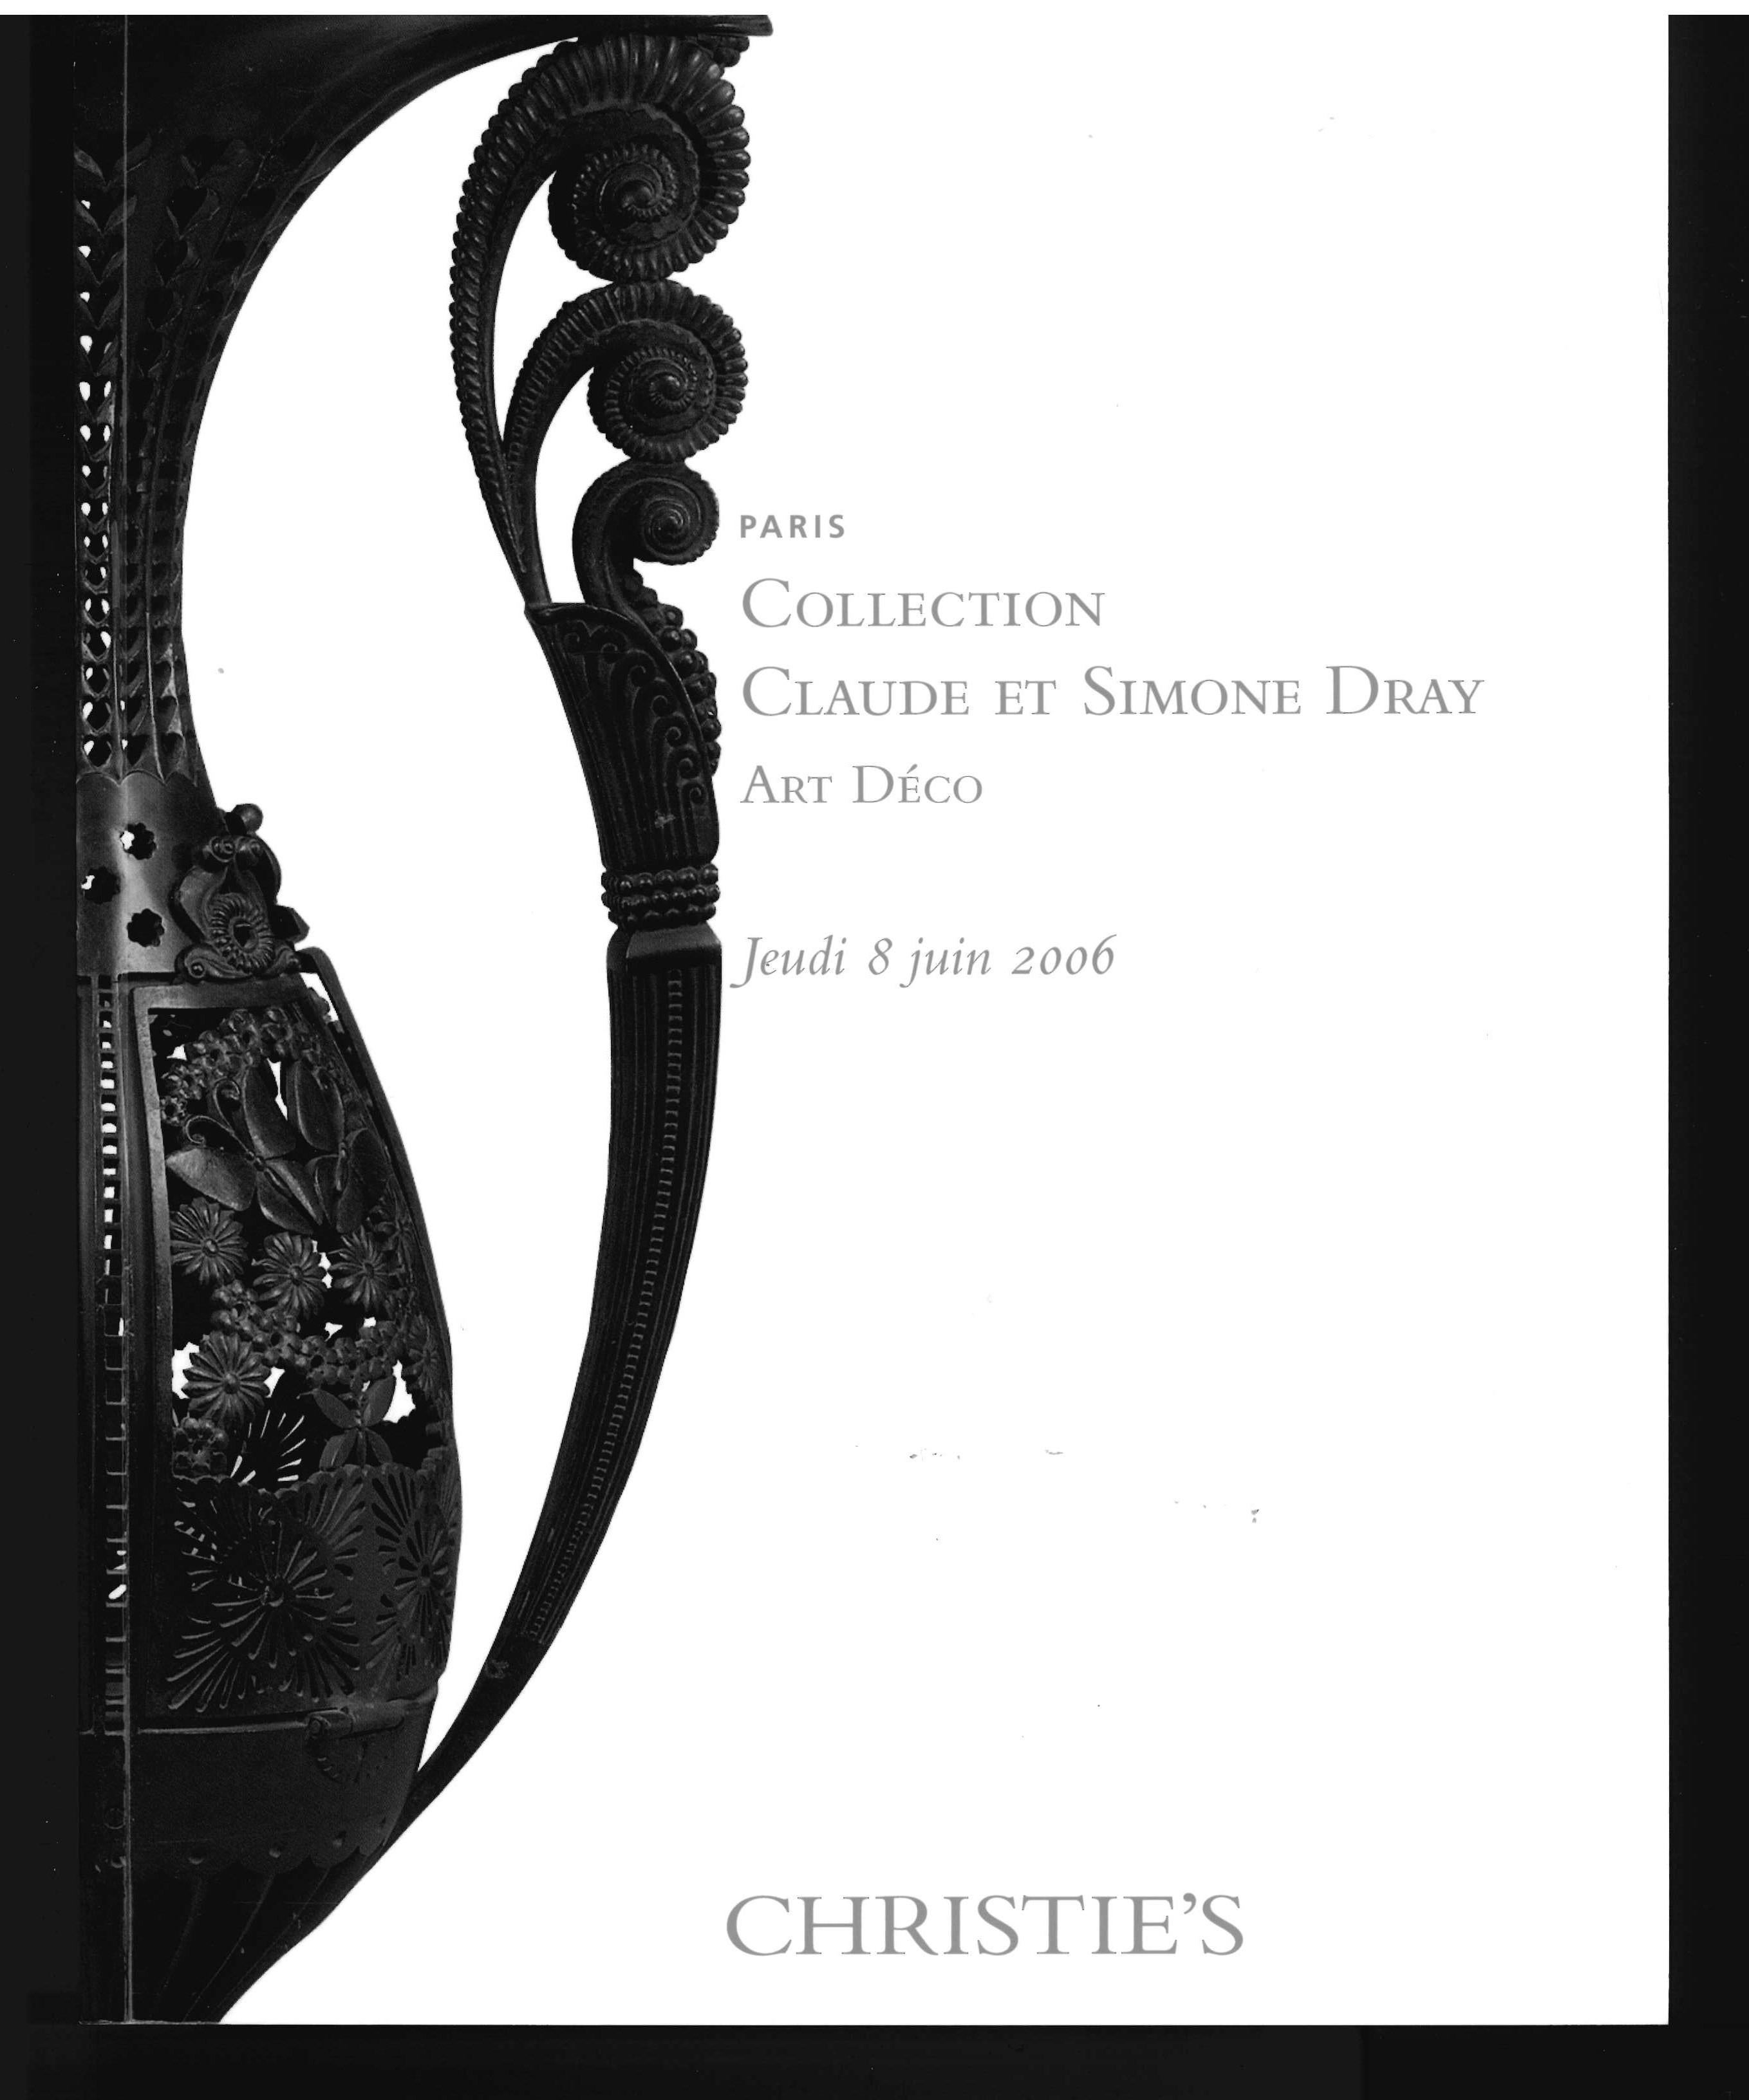 Il s'agit d'un ensemble de 2 volumes de catalogues de vente produits par Christie's en 2006 pour la vente de la collection de Claude et Simone Dray. L'impressionnante collection de chefs-d'œuvre de l'Art déco comptait 296 lots, tous illustrés et